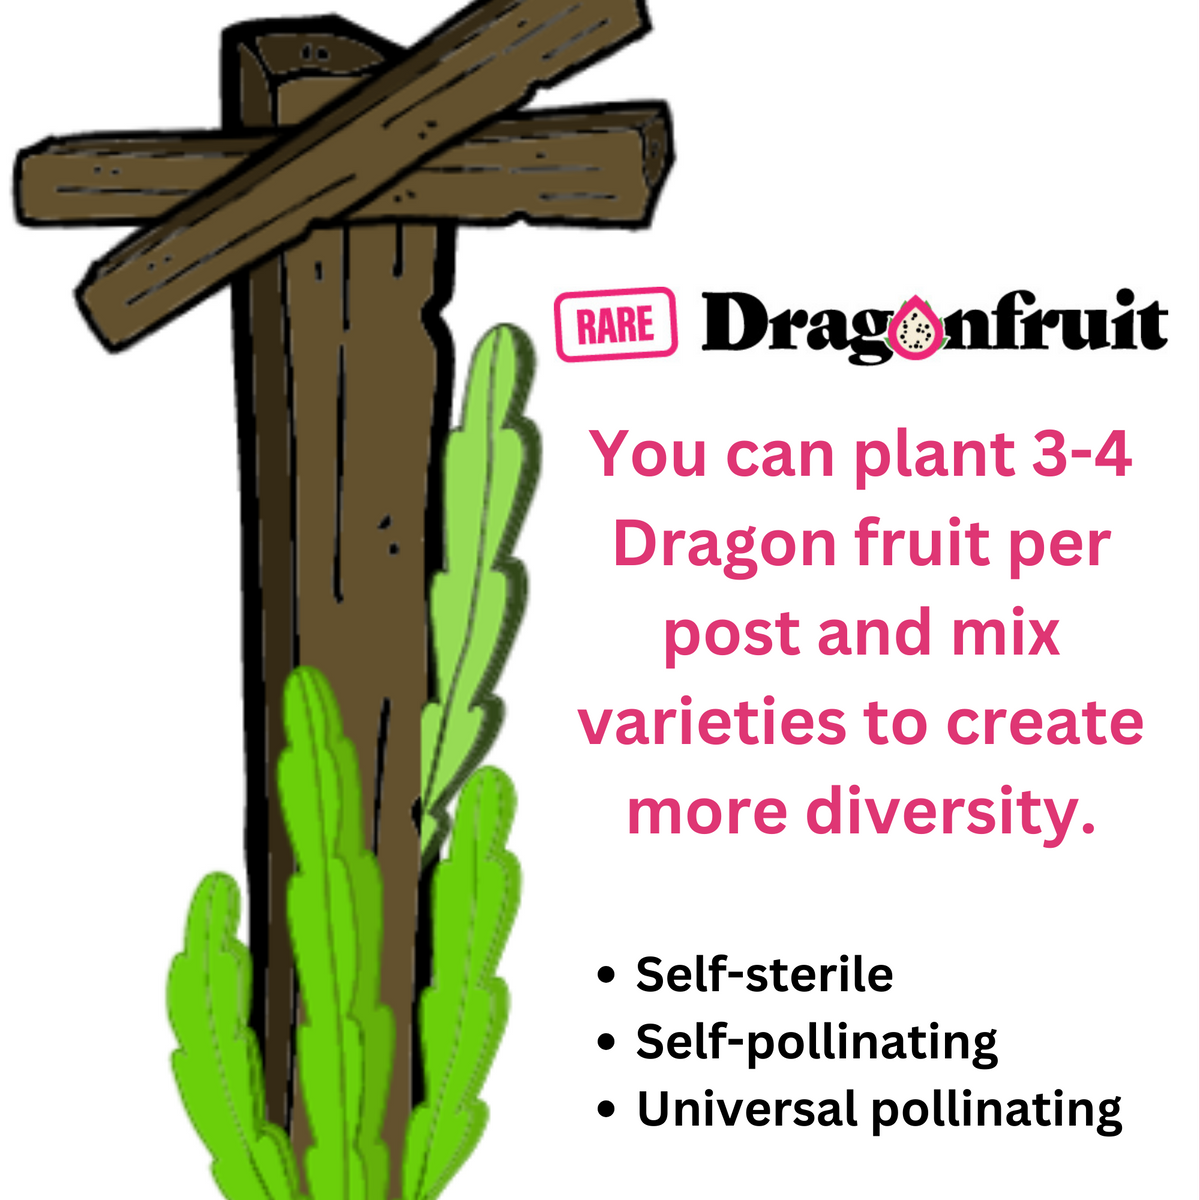 Desert King Dragon Fruit USA- NEW